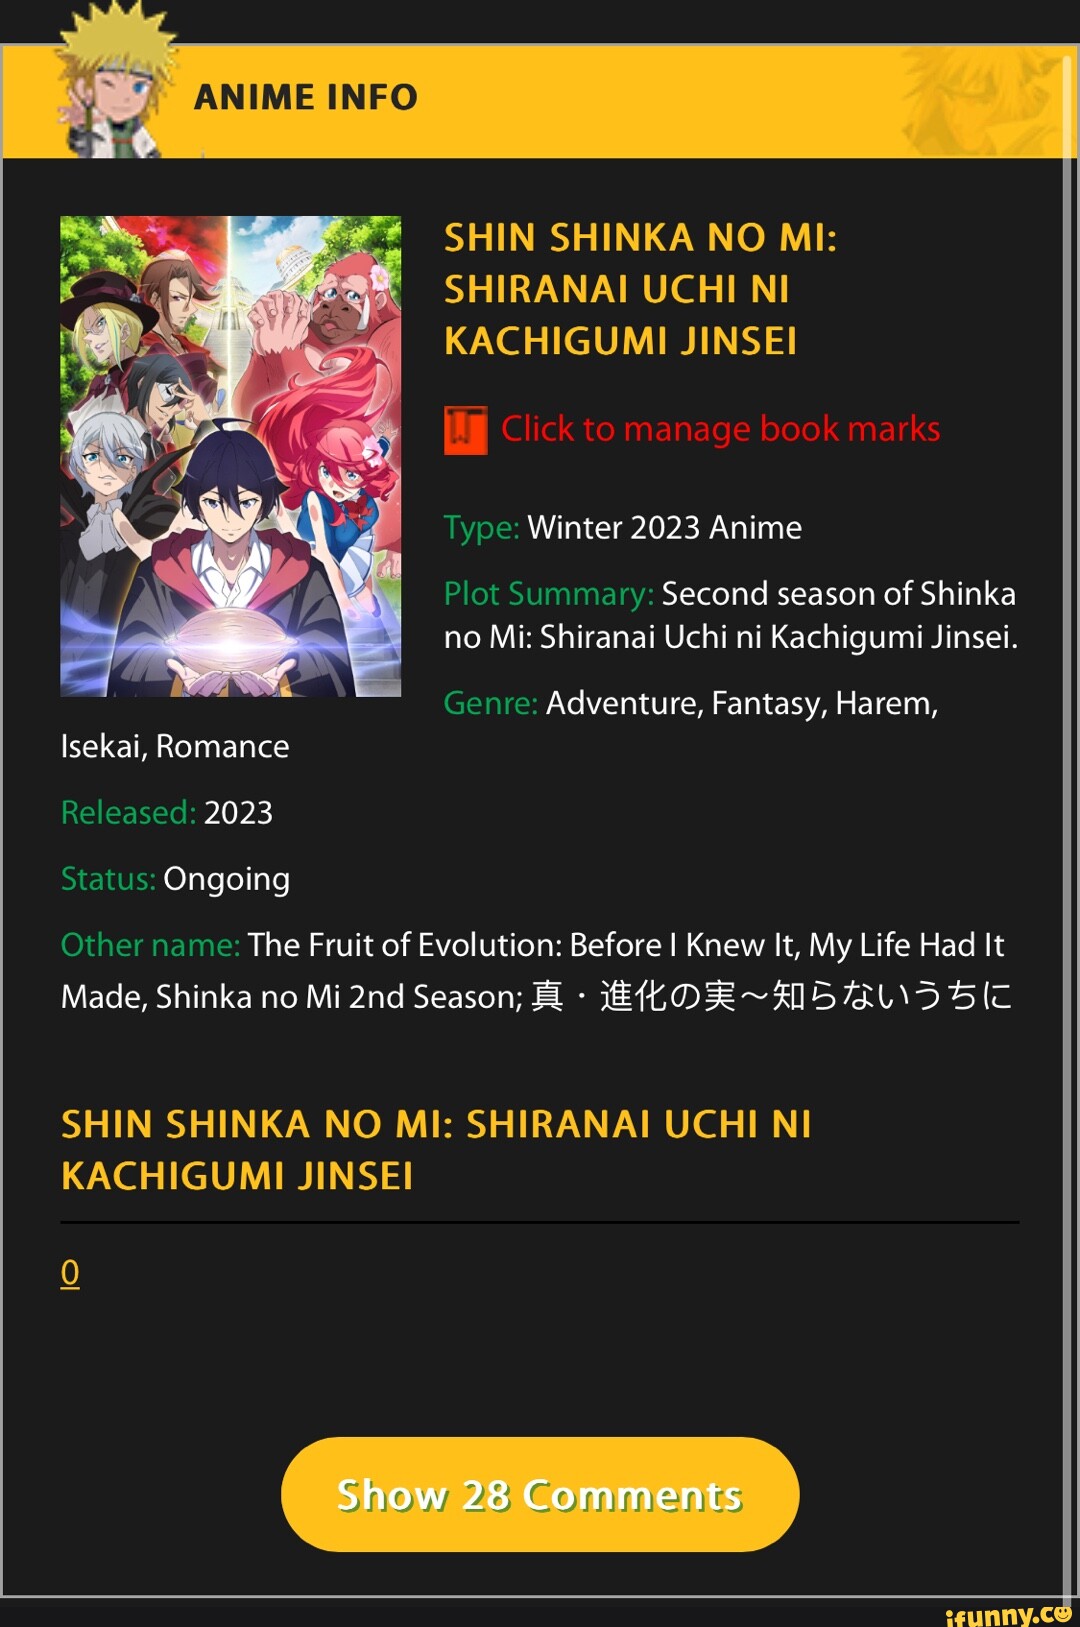 Shin Shinka no Mi: Shiranai Uchi ni Kachigumi Jinsei - The Fruit